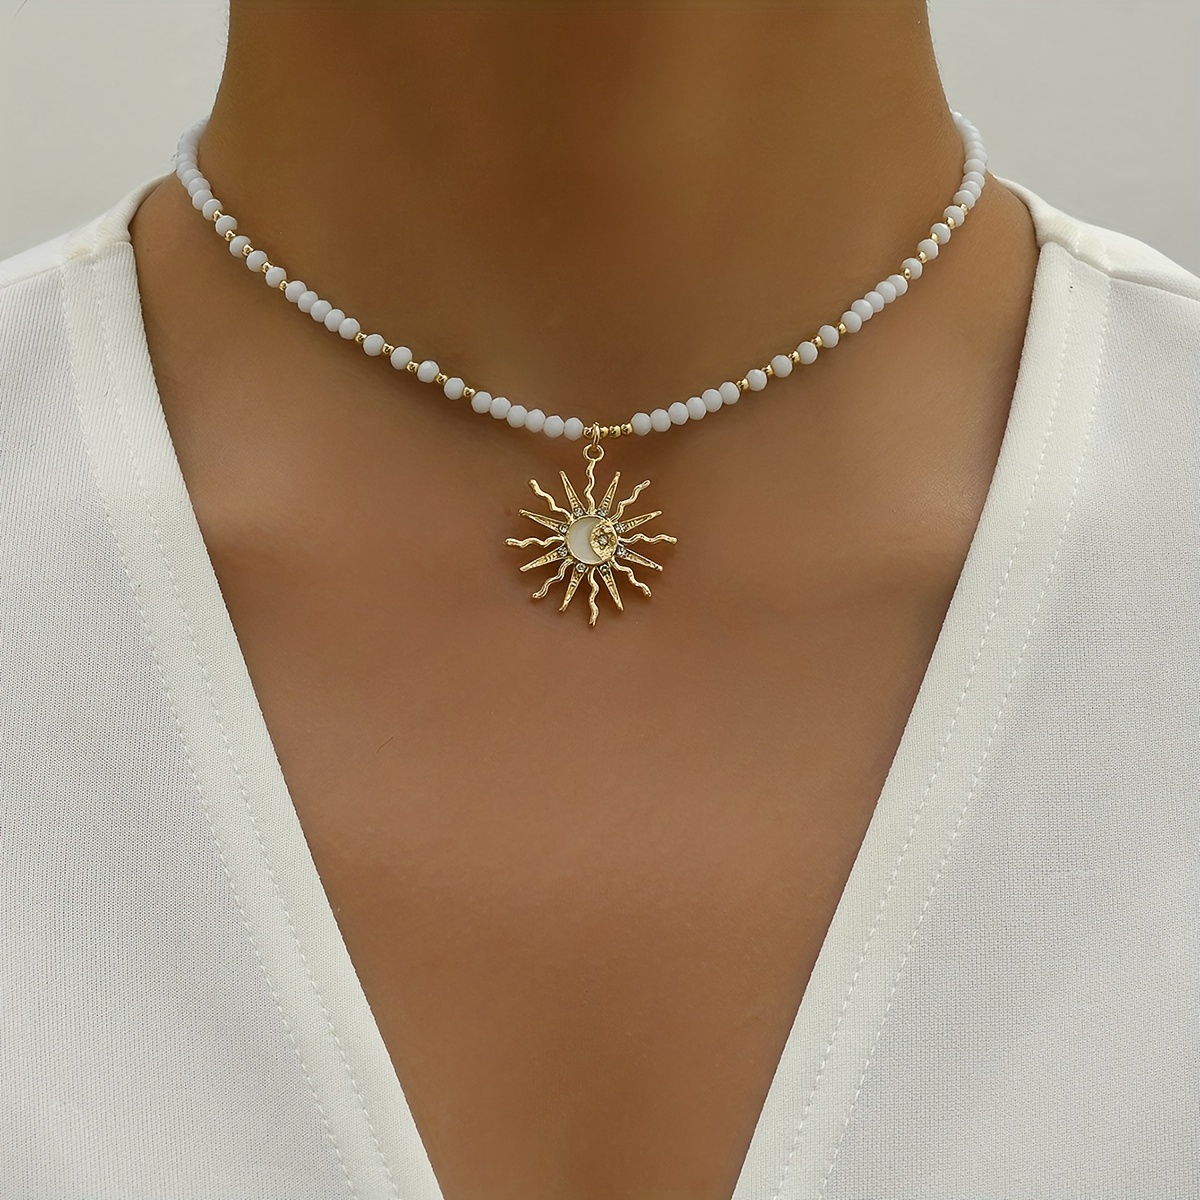 

Vintage Simple Sun Drop Oil Beads Necklace 14k Plated Neck Jewelry Sun Pendant Accessories